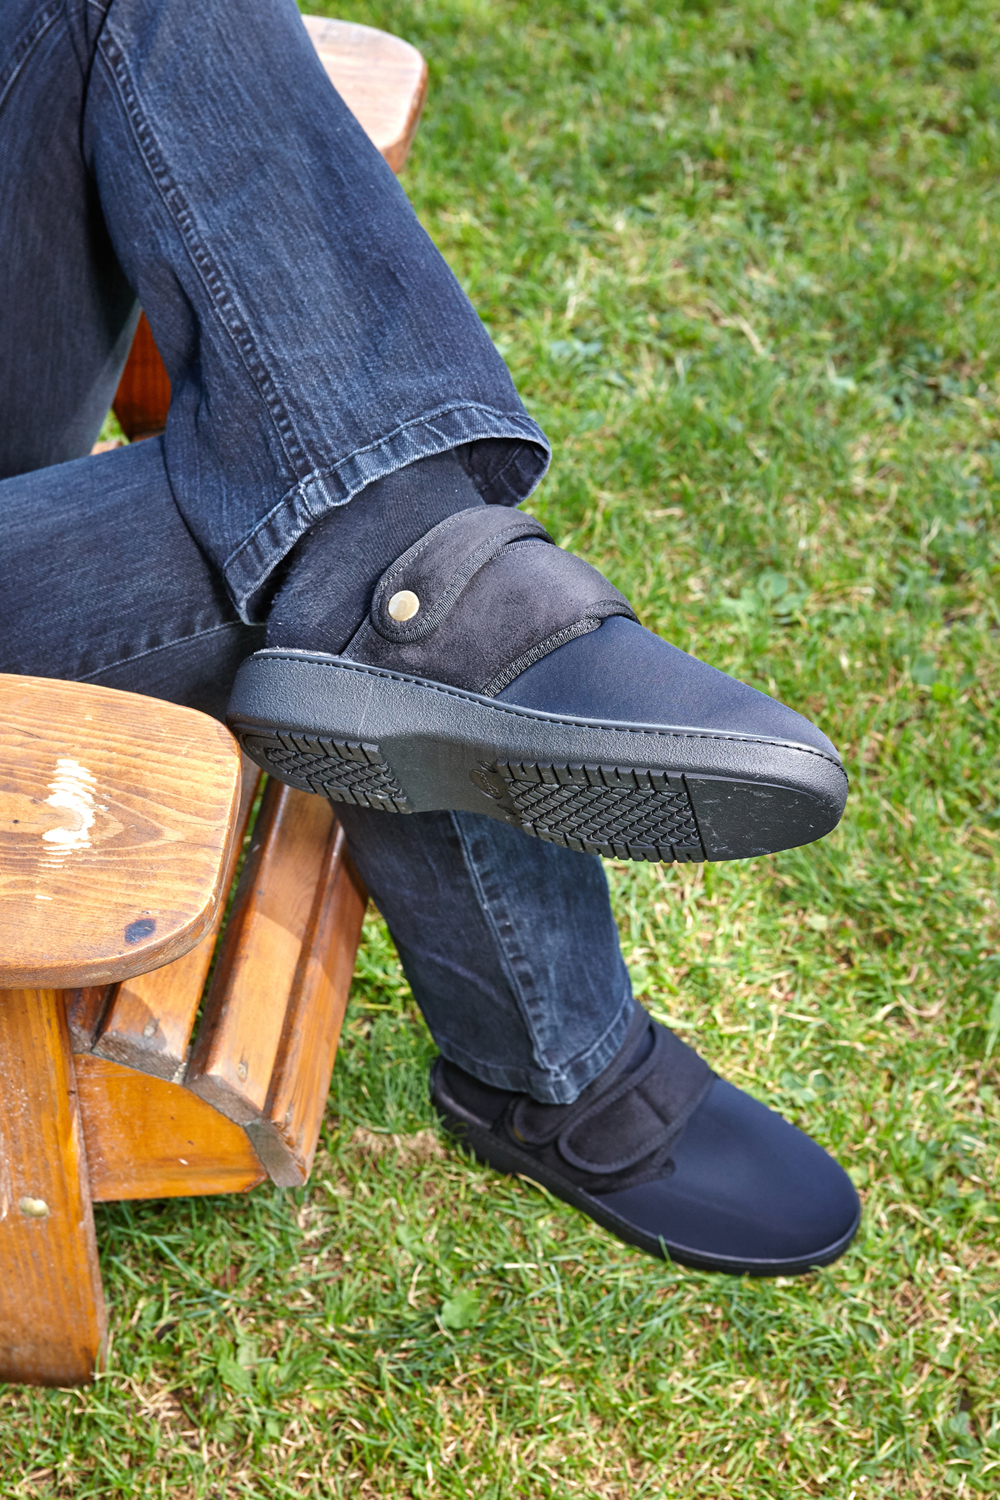 La scarpa comfort Promed Flex 2 è adatta per interni ed esterni